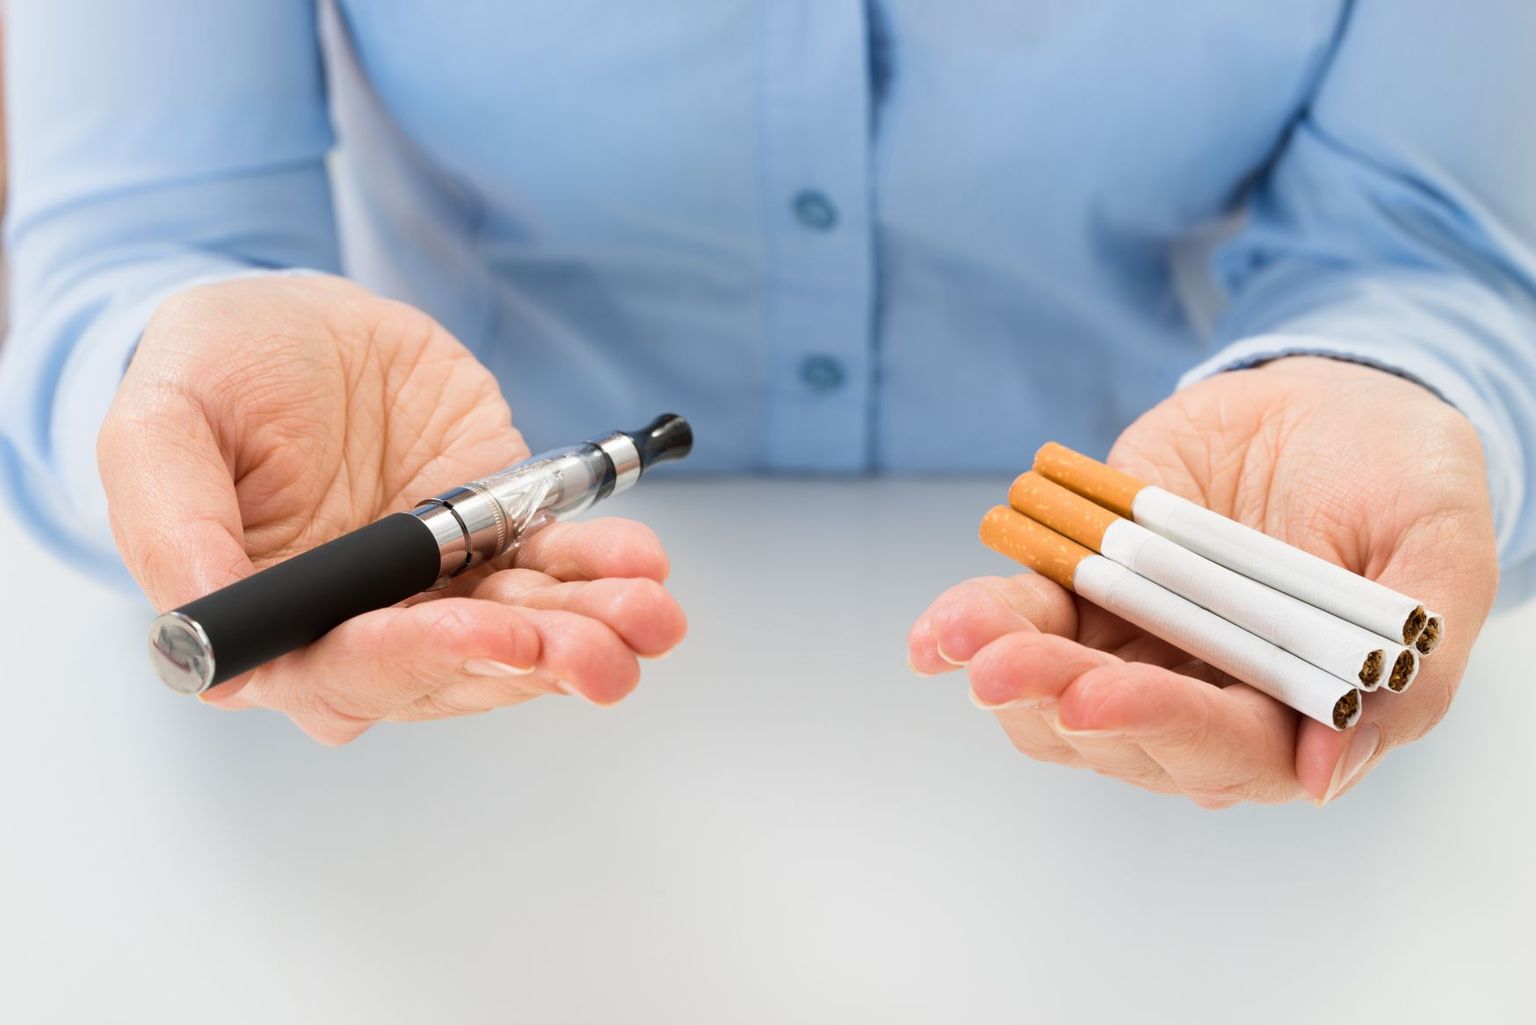 Värske uuring toob välja, et e-sigarettide suitsetamine soodustab tavasigarettide tarbimist.